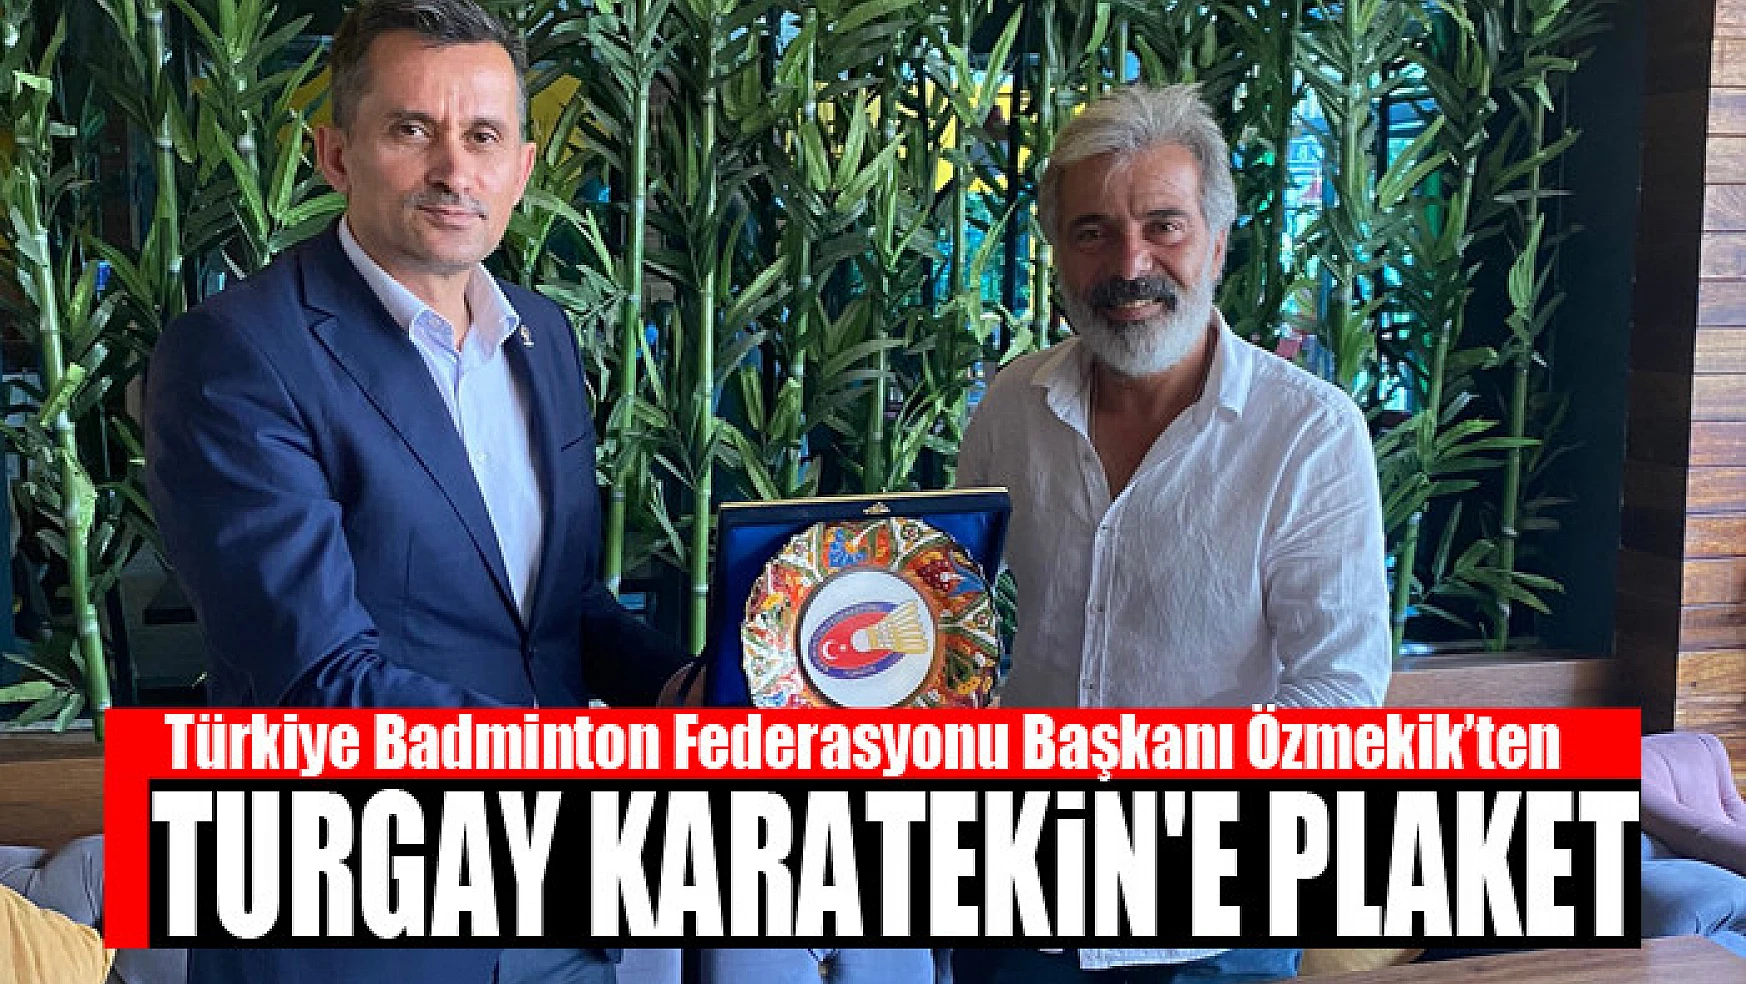 Başkan Özmekik'ten Turgay Karatekin'e plaket